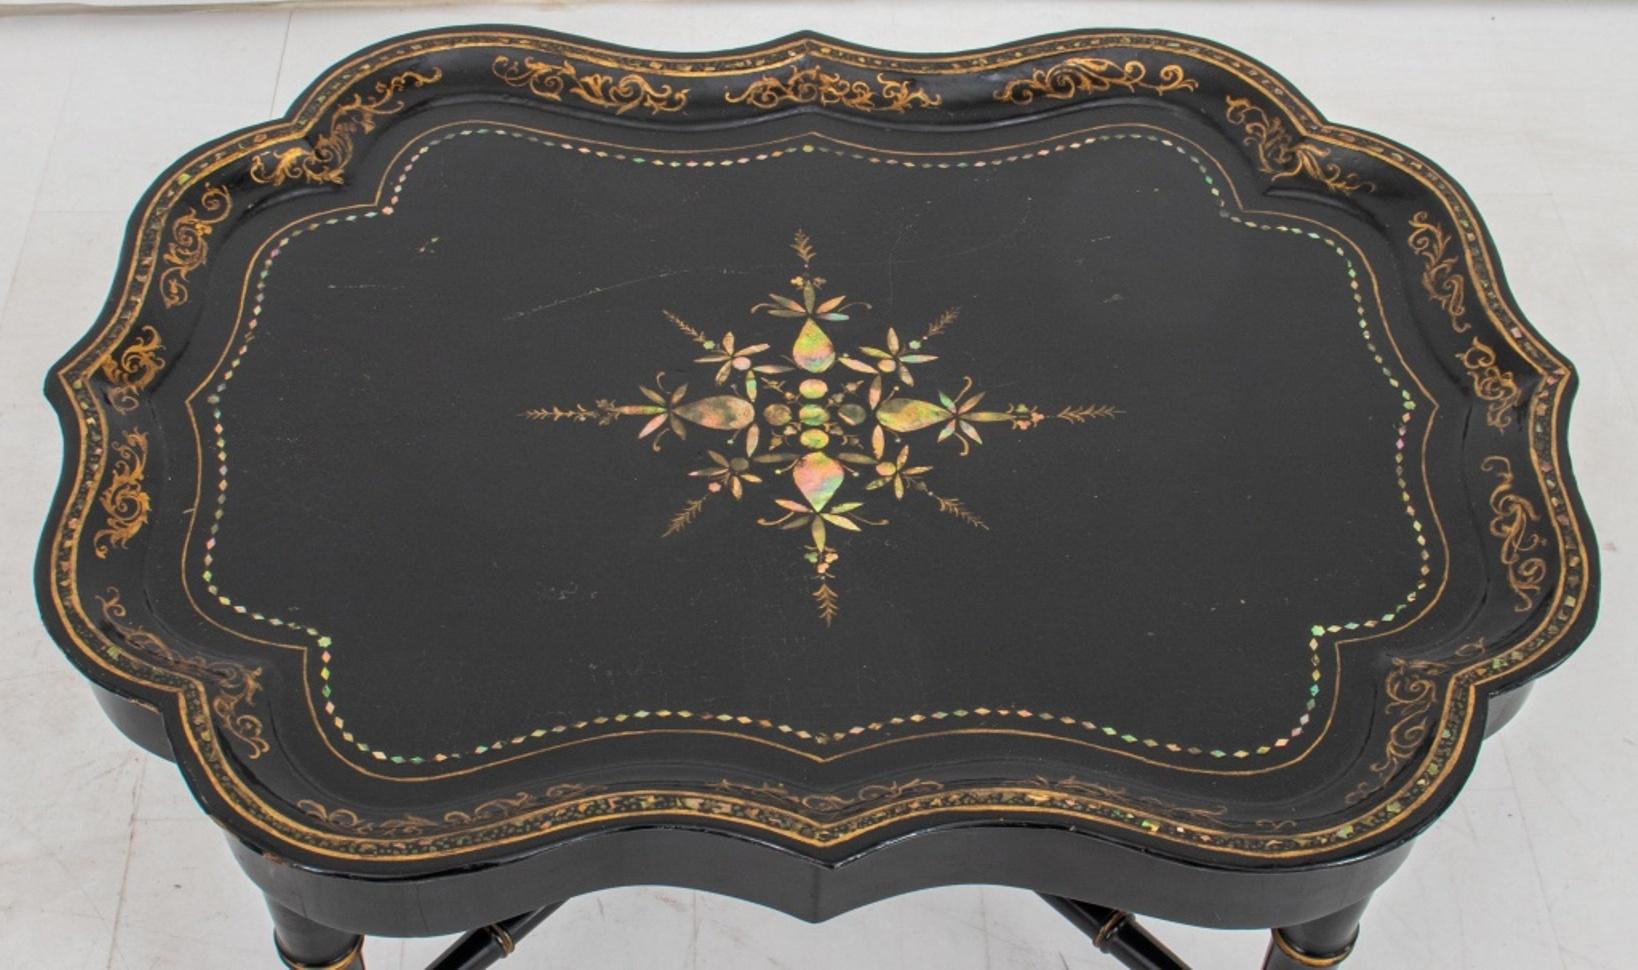 Viktorianischer Chinoiserie-Tisch, lackiert und mit Abalone-Intarsien (Pappmaché), mit Muschelfragmenten an den Rändern, schwarz lackiert und mit vergoldeten Verzierungen an der Oberfläche und am Rand, auf einem Bambus-Sockel mit X-förmigen